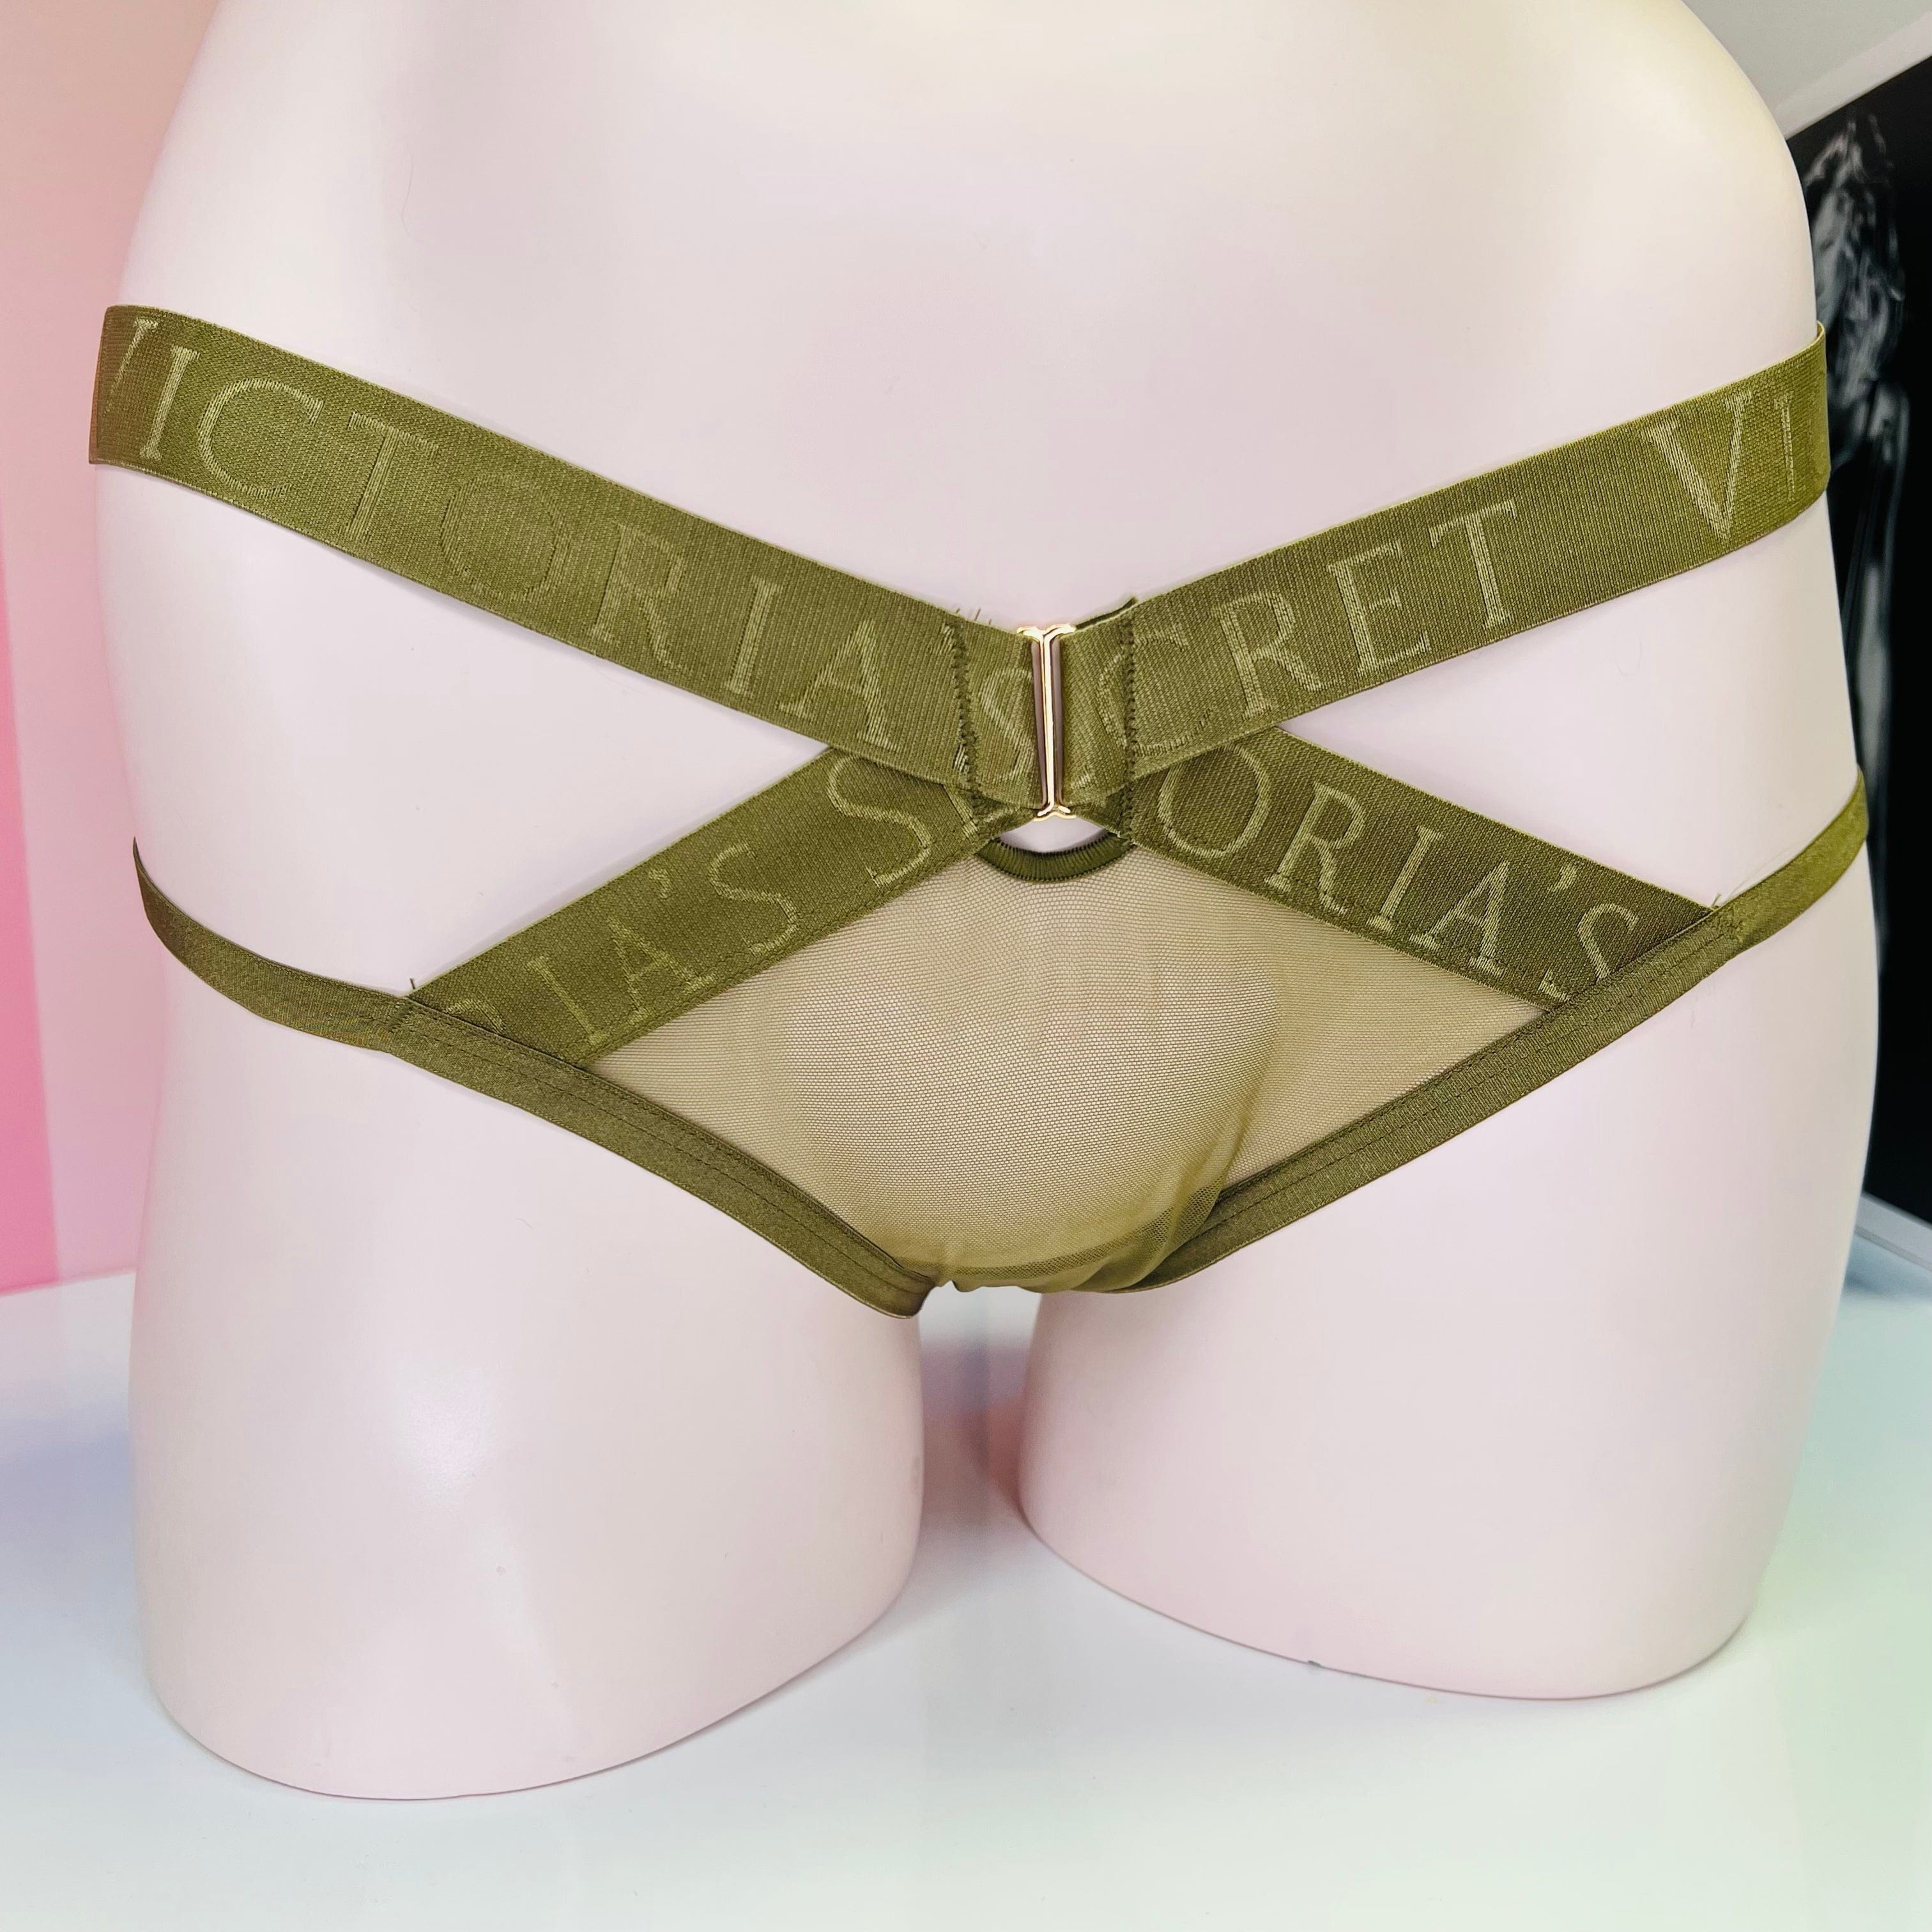 Kalhotky s pásky - Khaki / M / Nové se štítky - Cheeky Victoria’s Secret